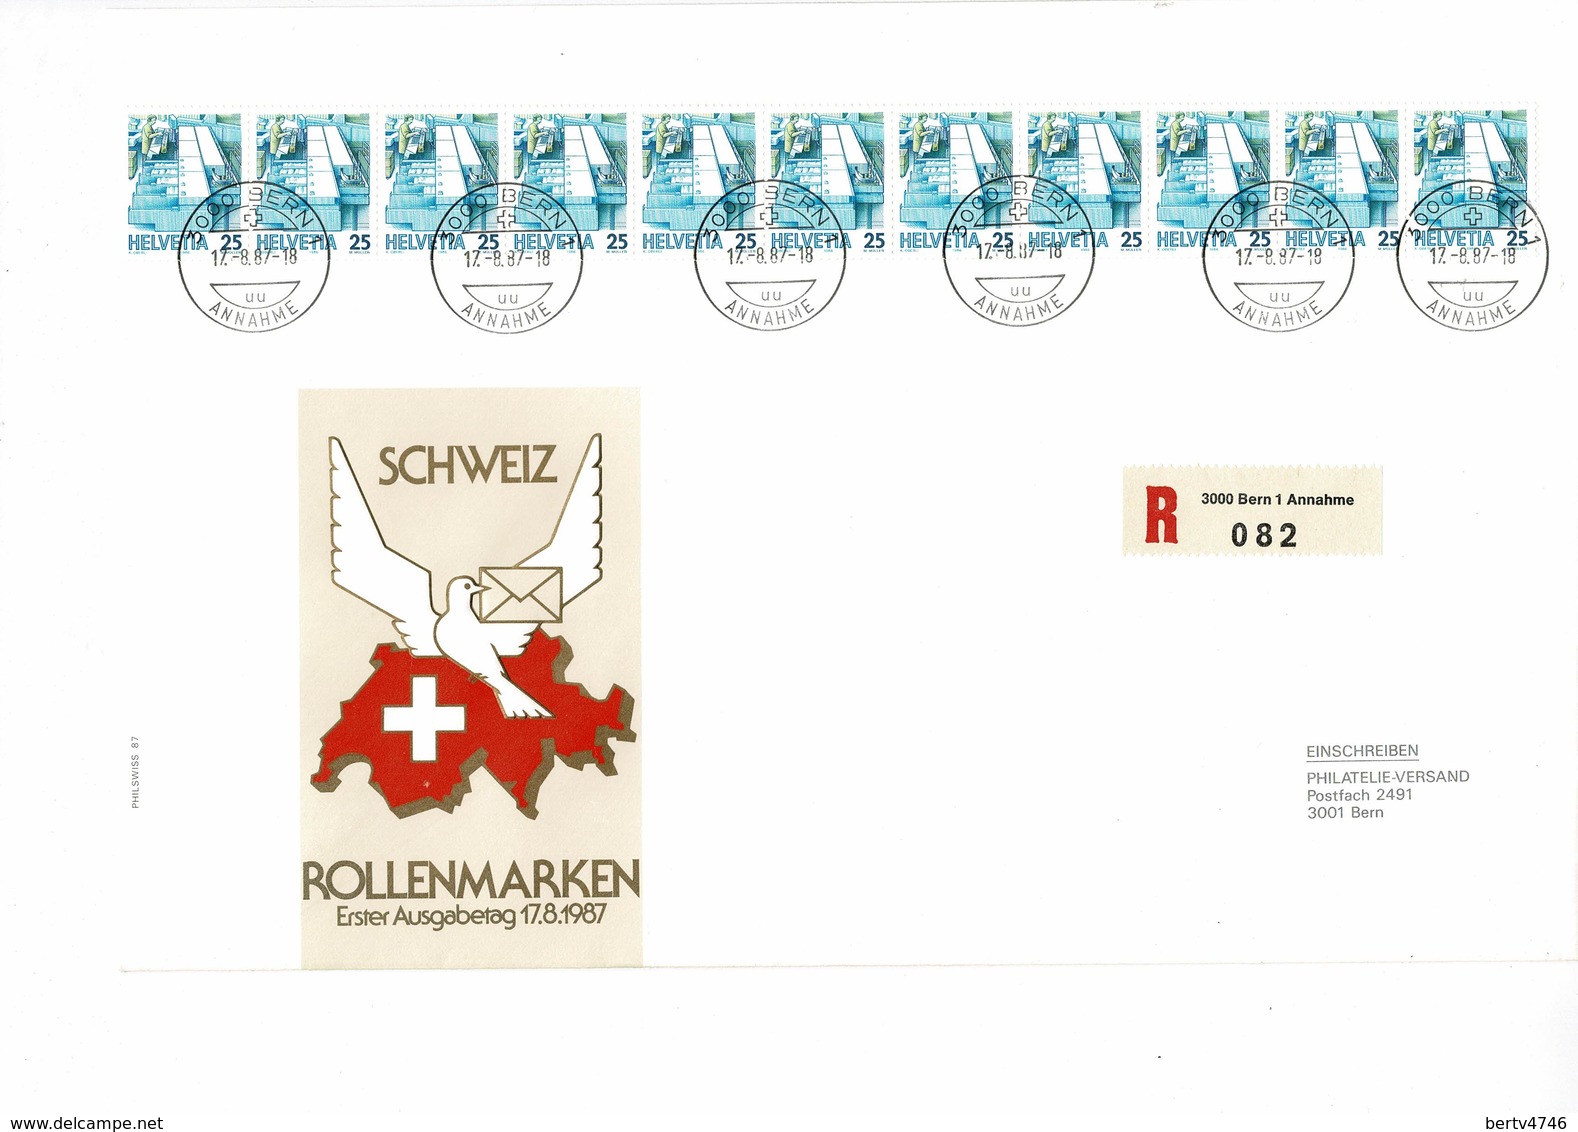 Helvetia FDC Schweiz Rollenmarken 17.8.1987 - Einschreiben - 3000 Bern 1 Annahme 082 - Coil Stamps